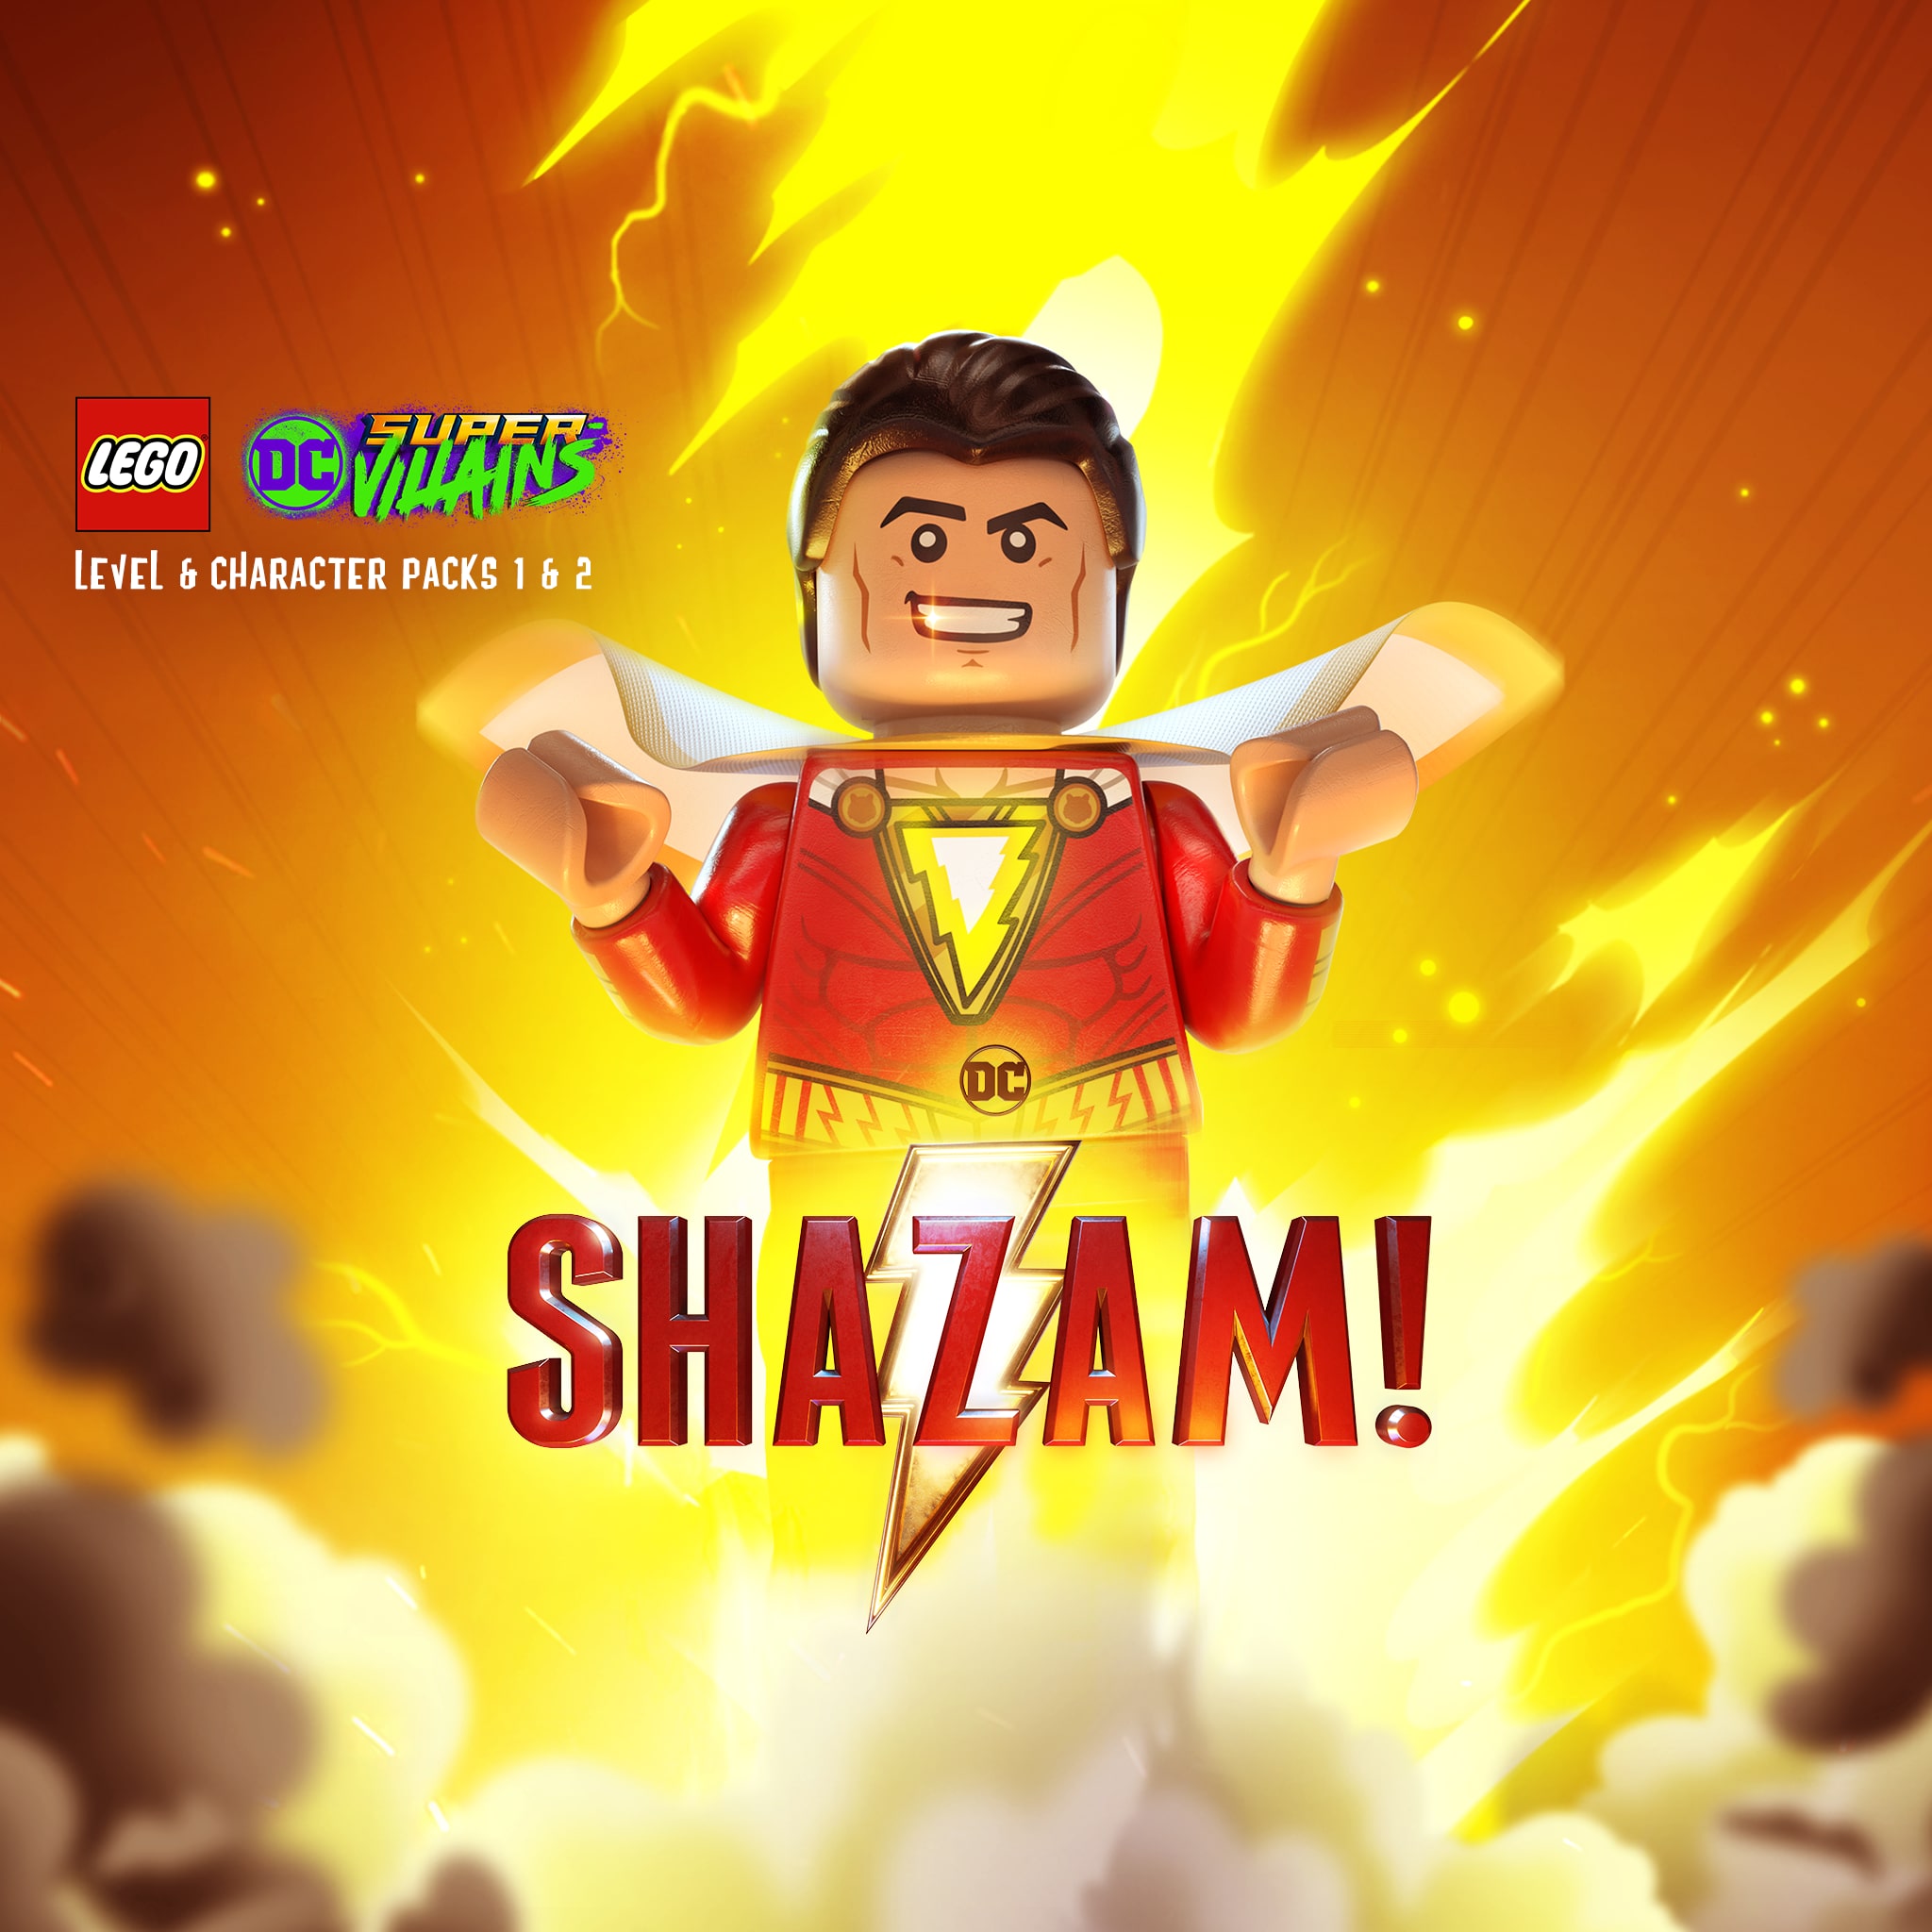 LEGO® DC Super-Villains Shazam! Movie-levelpakket 1 & 2